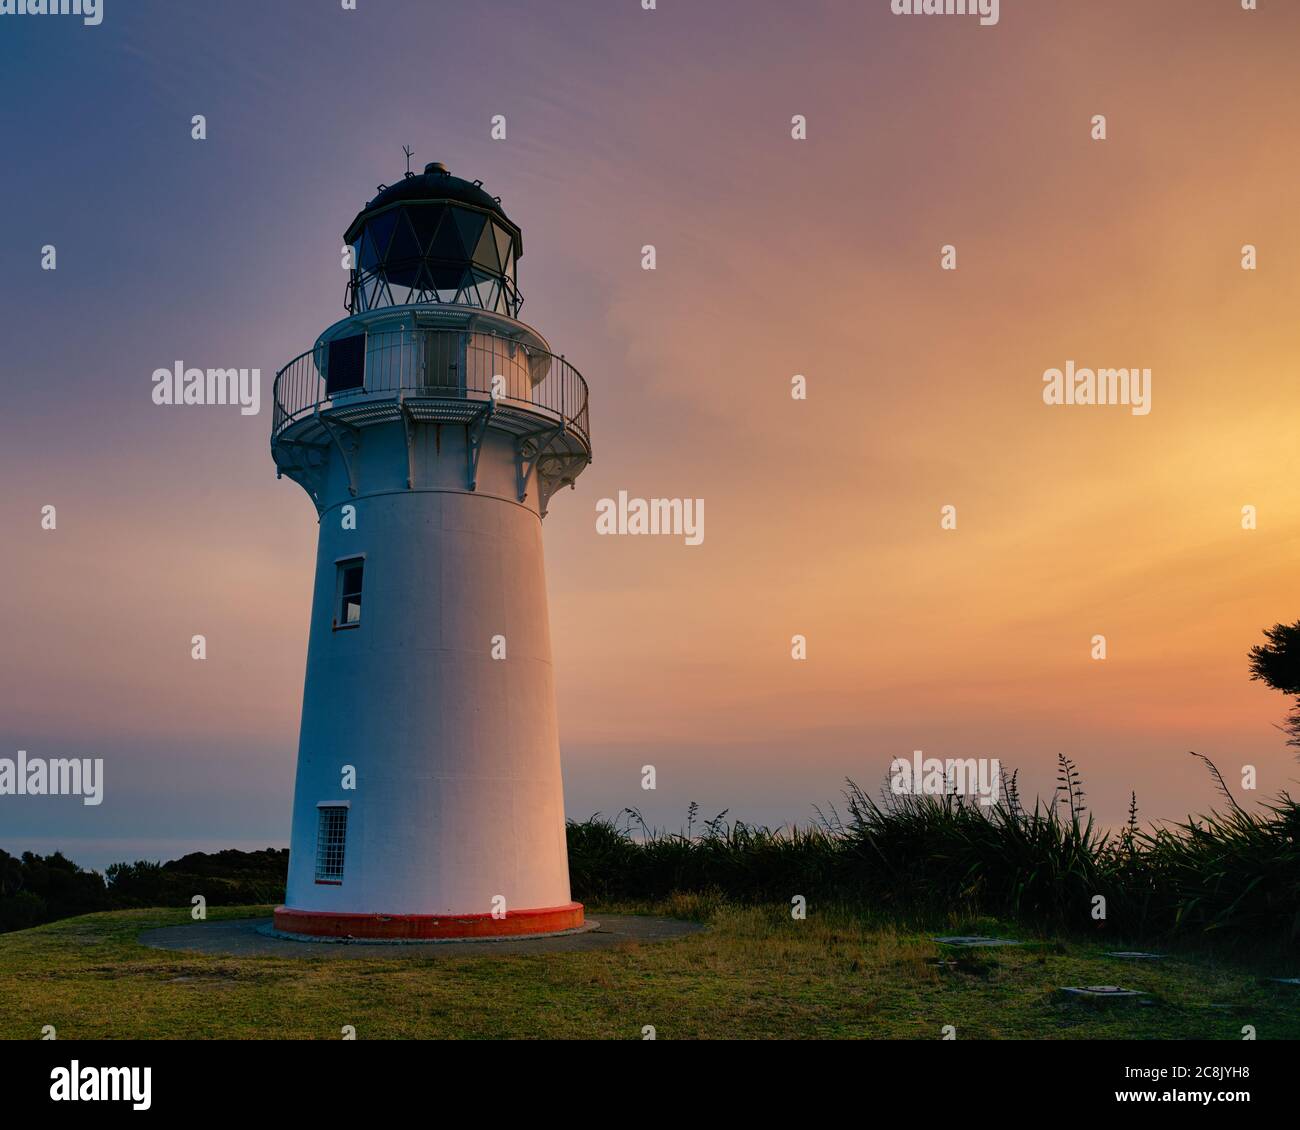 Le phare du Cap est situé à l'extrémité est de l'île du Nord de la Nouvelle-Zélande. Cette photo a été prise au coucher du soleil pendant l'été. Banque D'Images